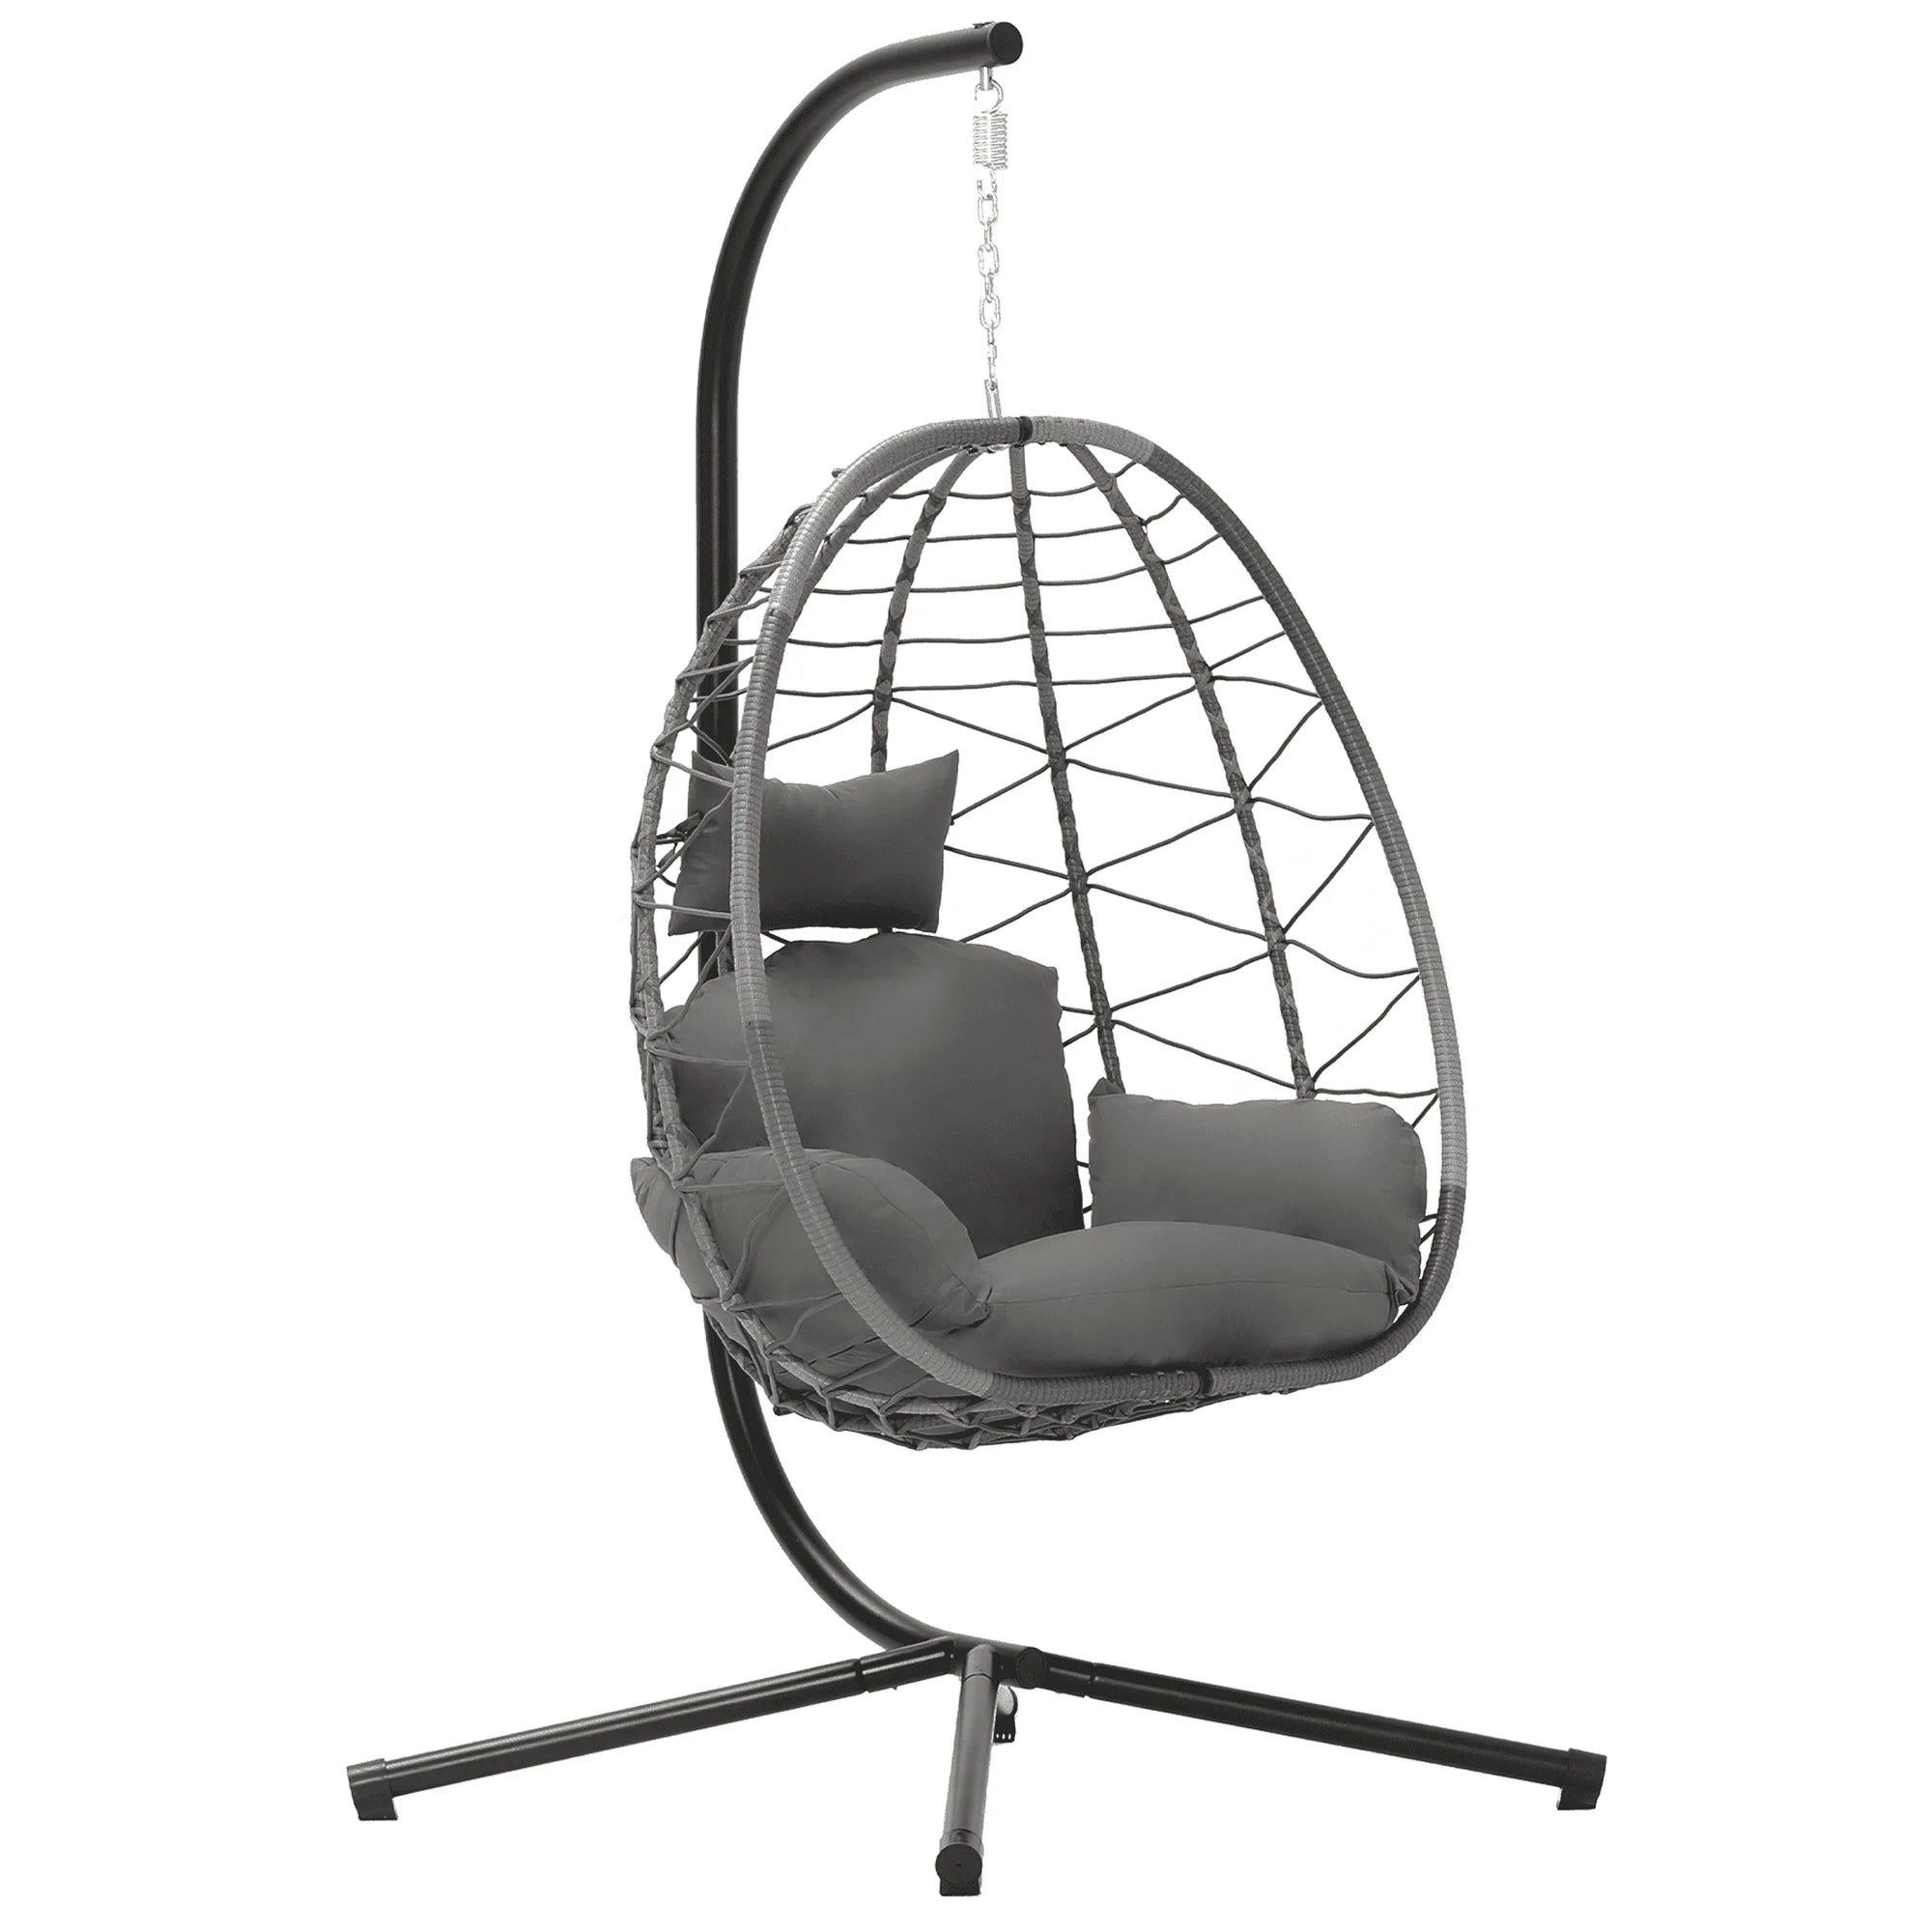 Wicker Swing Egg Chair